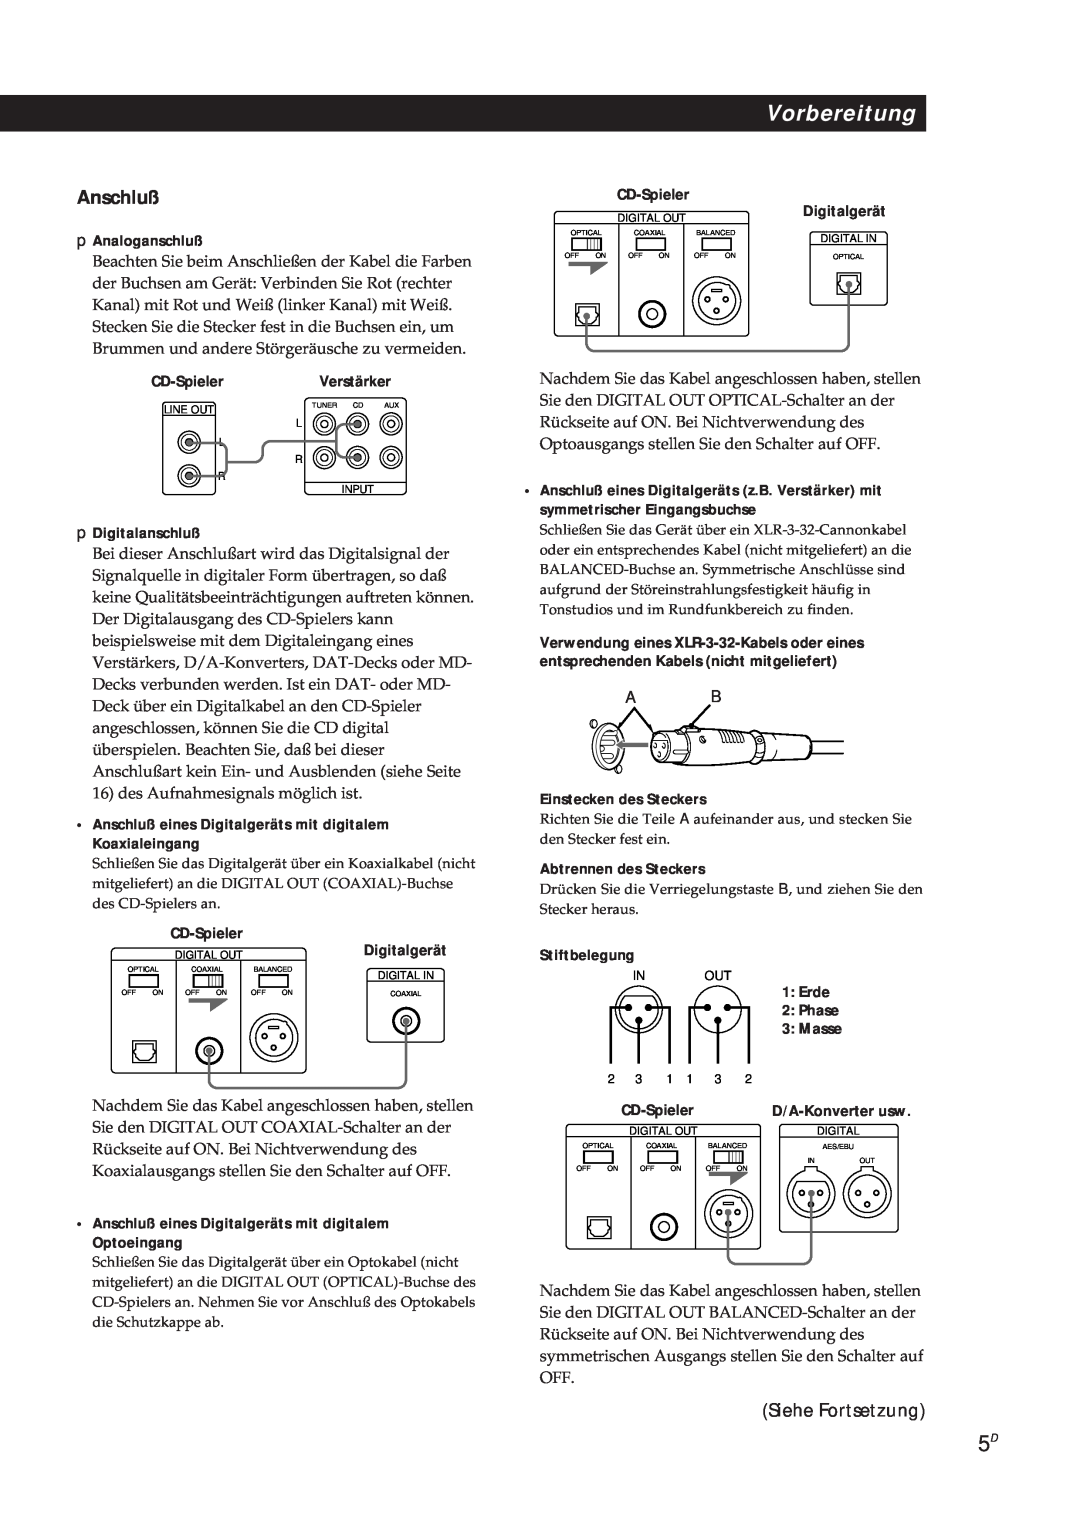 Sony CDP-X5000 manual Vorbereitung, Anschluß, Siehe Fortsetzung, pAnaloganschluß, pDigitalanschluß, Einstecken des Steckers 